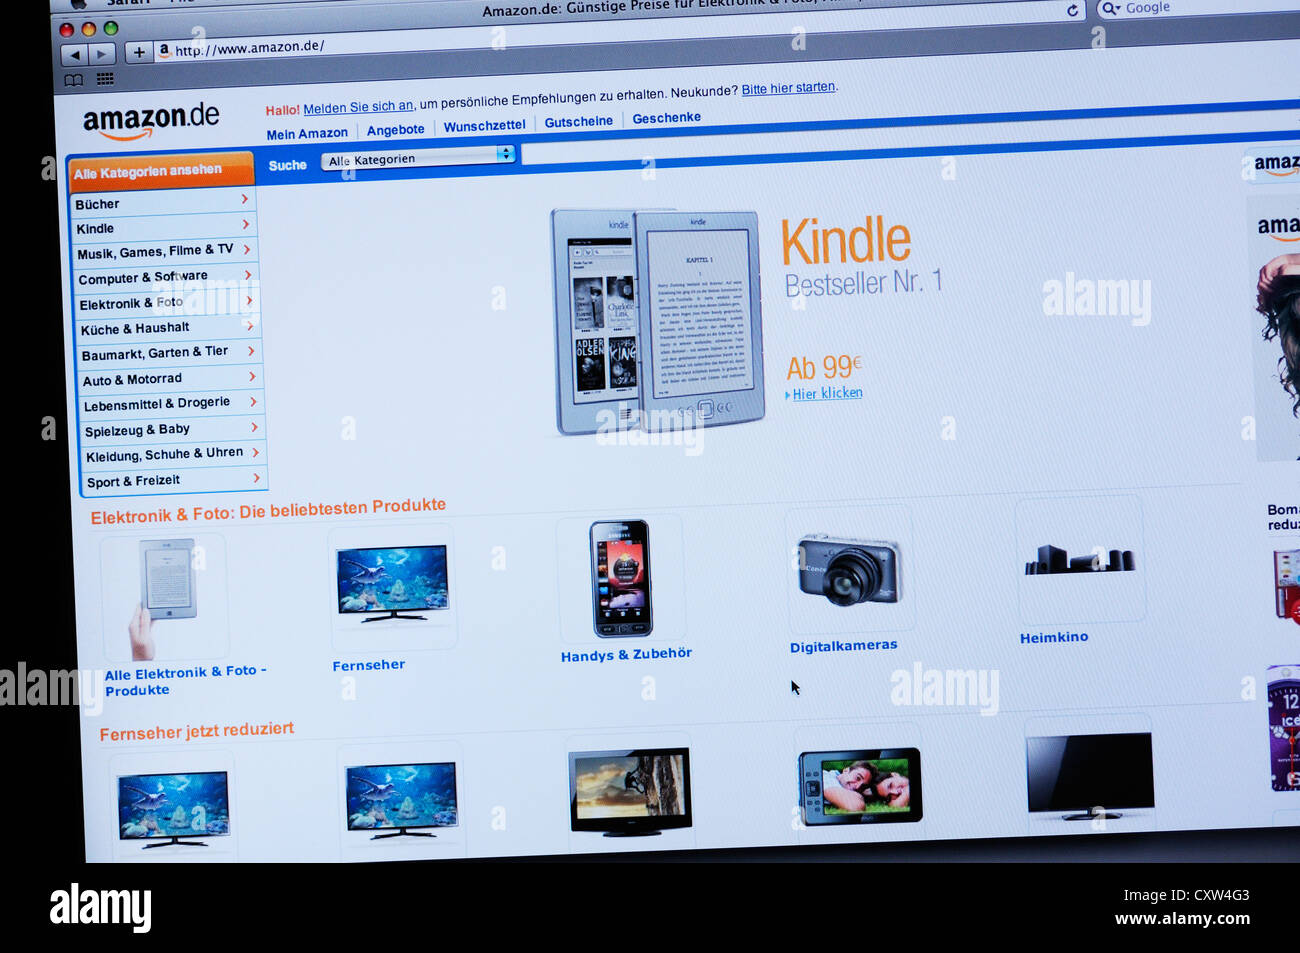 Amazon Germany website - Kindle Stock Photo - Alamy